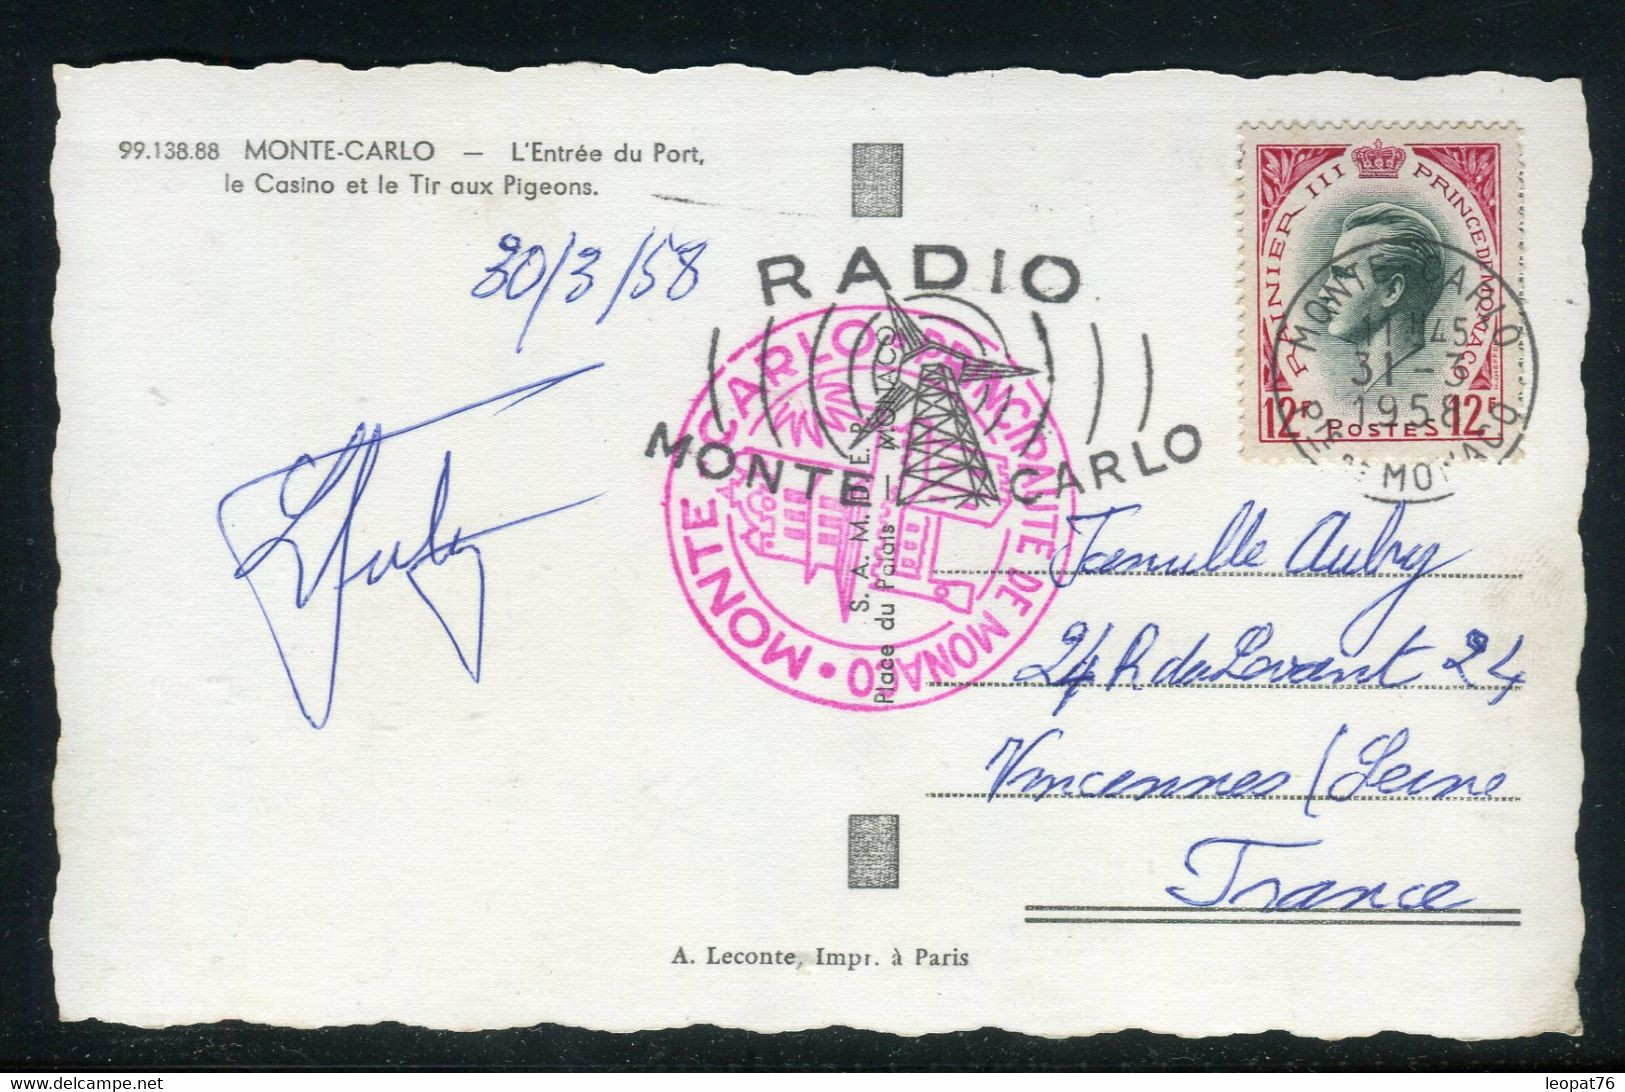 Lettres & Documents - Monaco - Oblitération mécanique illustrée ( Radio  Monte Carlo ) sur carte postale en 1958 pour Vincennes - Ref N 155